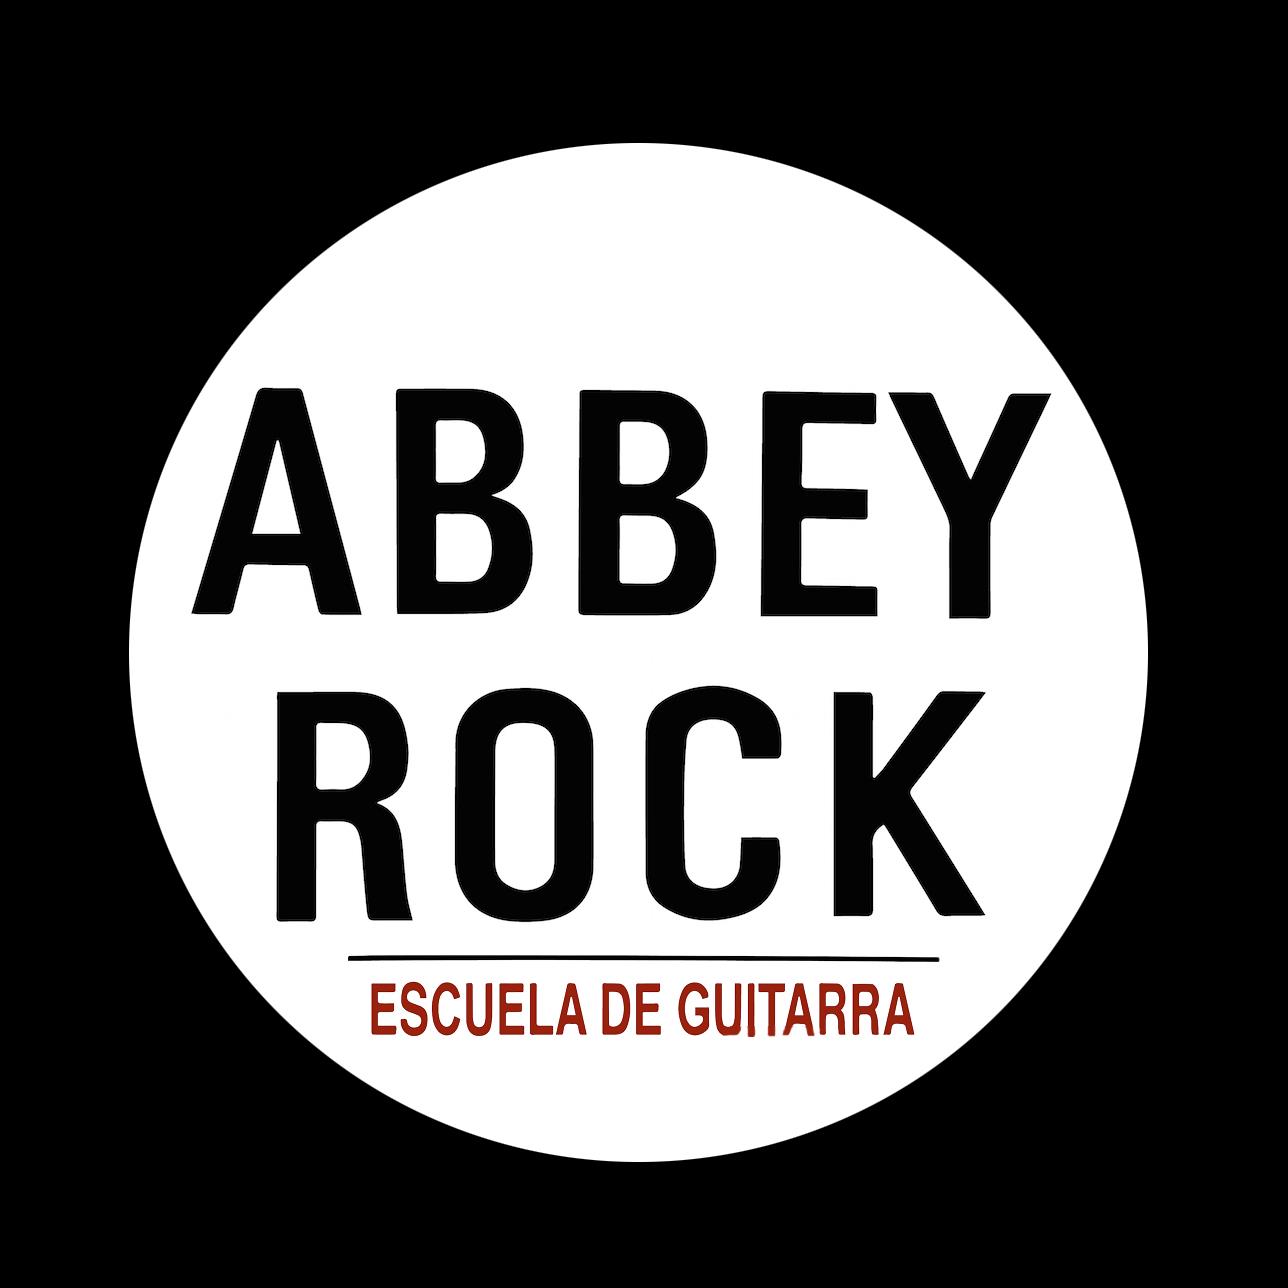 Abbey Rock